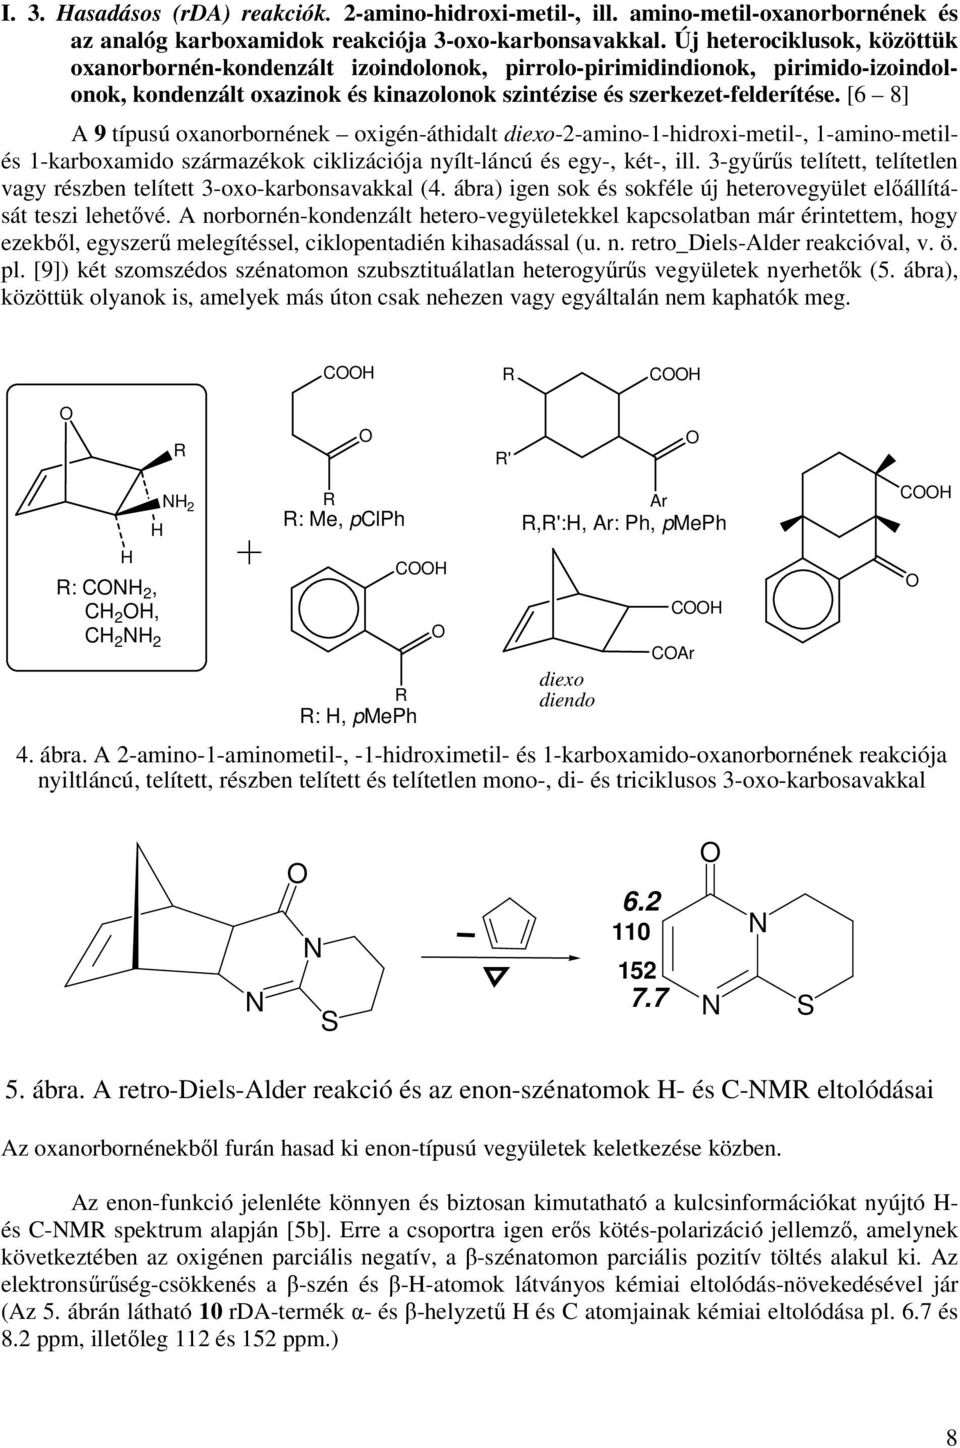 [6 8] A 9 típusú oxanorbornének oxigén-áthidalt diexo-2-amino-1-hidroxi-metil-, 1-amino-metilés 1-karboxamido származékok ciklizációja nyílt-láncú és egy-, két-, ill.